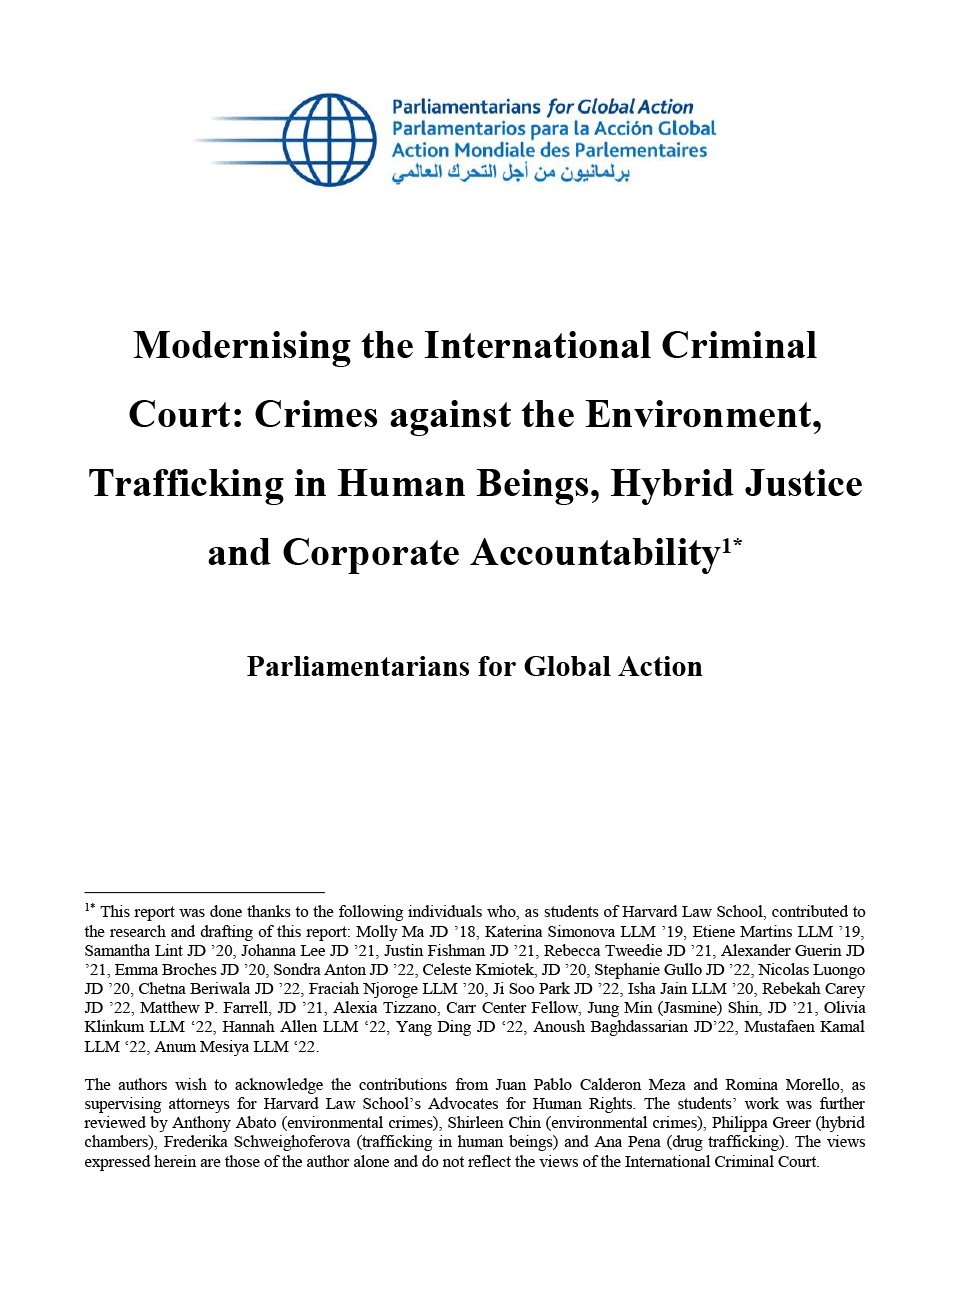 Modernizando la Corte Penal Internacional: Crímenes contra el Medio Ambiente, Trata de Seres Humanos, Justicia Híbrida y Responsabilidad de las Empresas